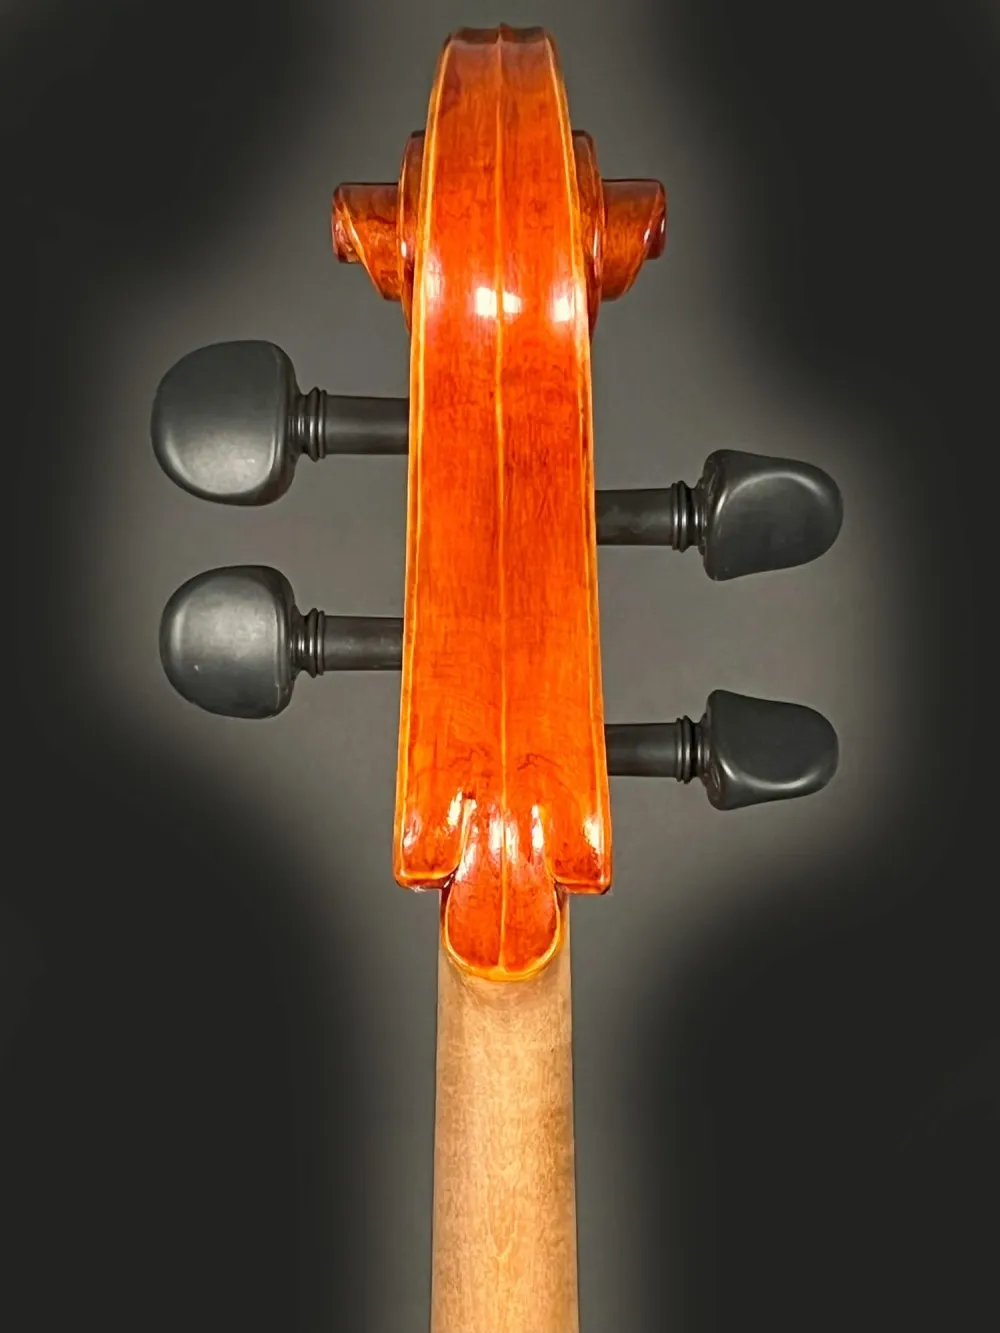 Schnecke-hinten-Detailansicht einer Simon Joseph Montagnana Cello (Violoncello) Handarbeit 2020